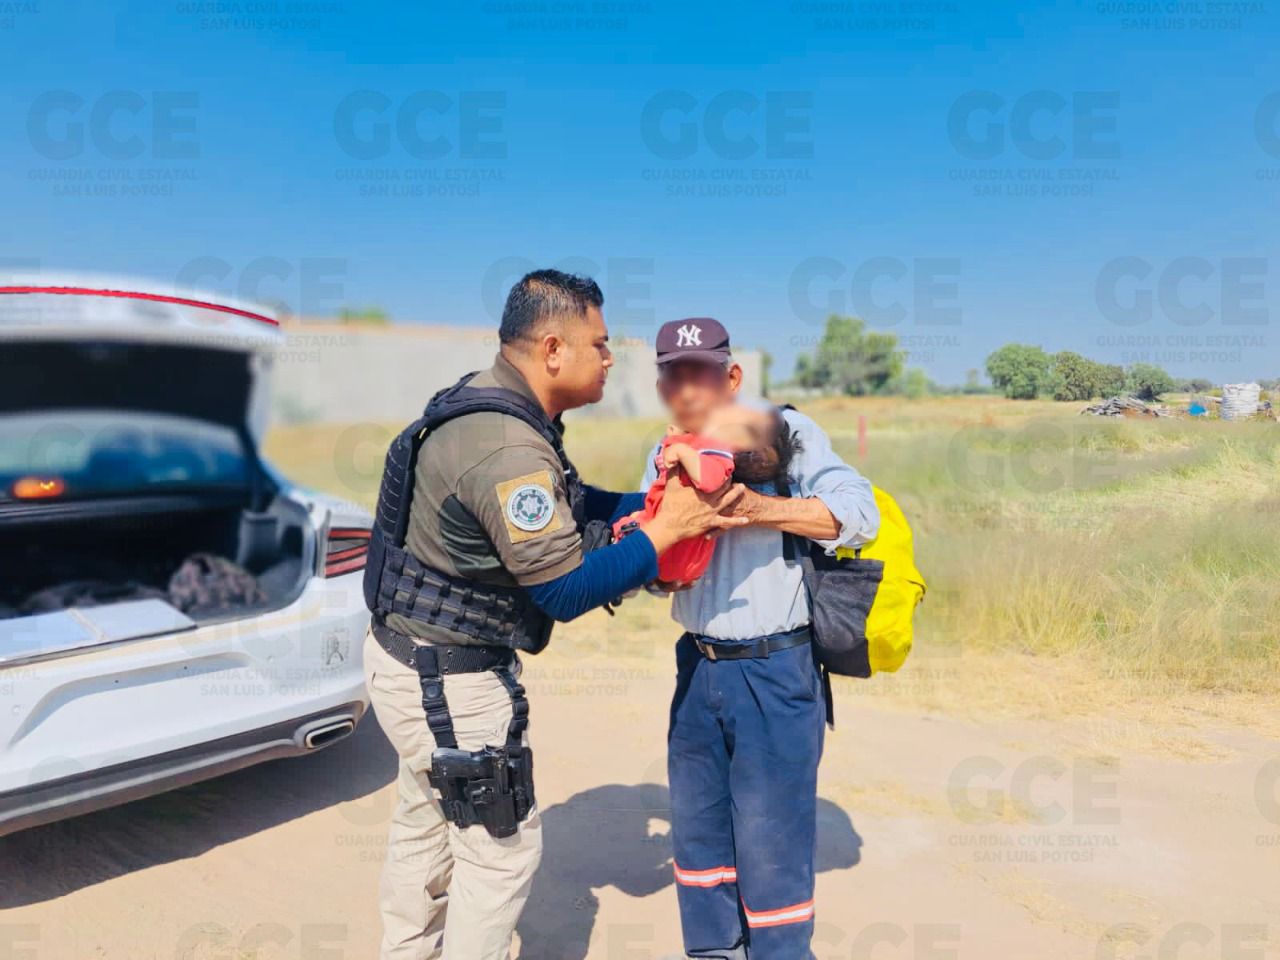 Guardia Civil resguarda a menor de edad, presuntamente abandonado por sus padres